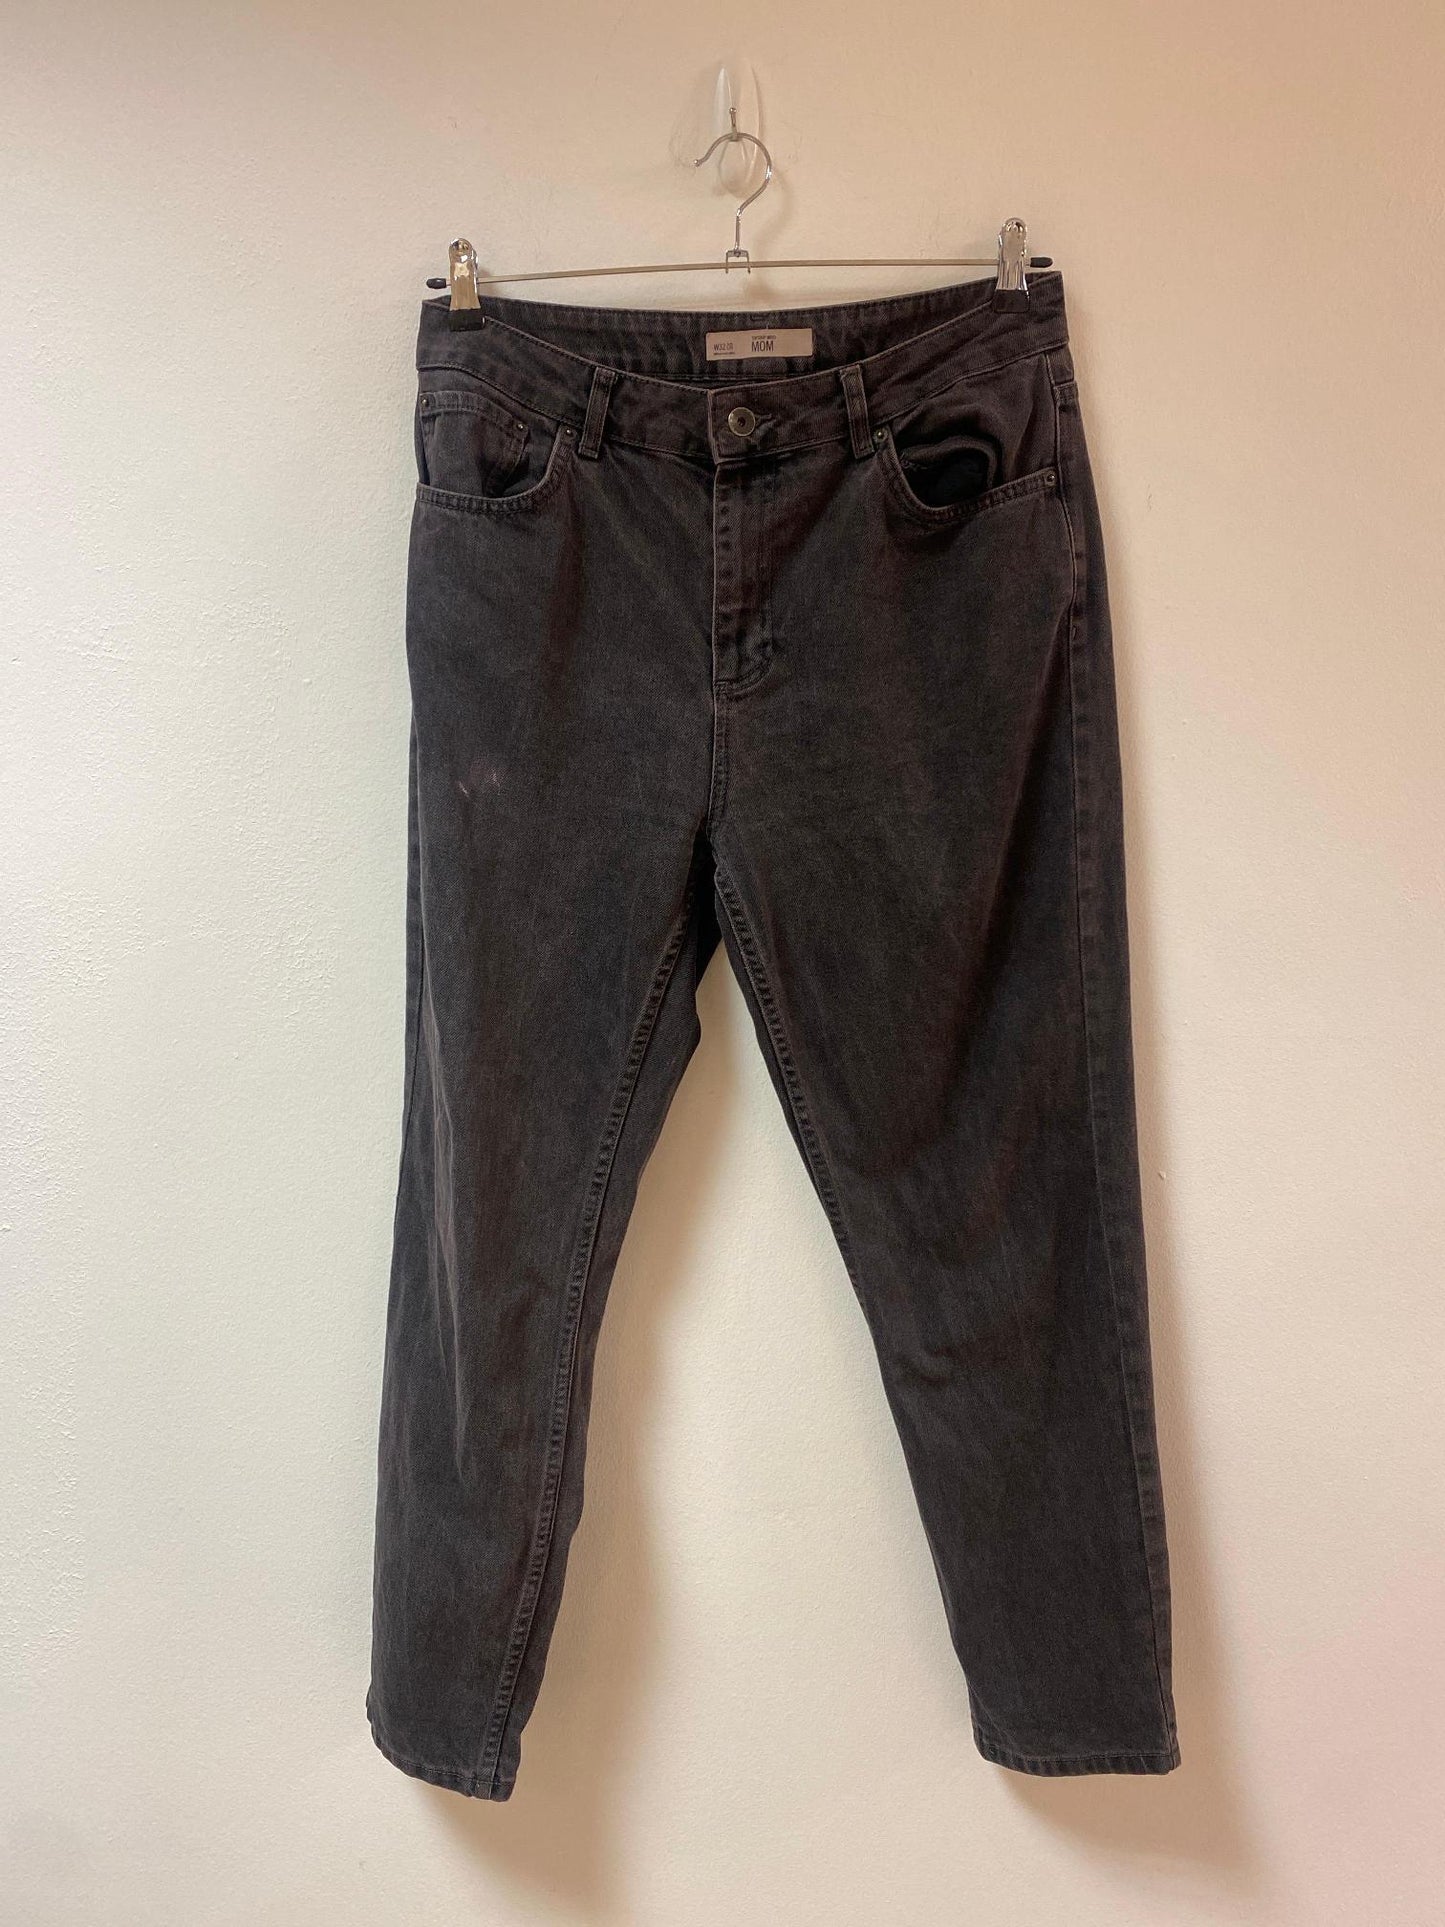 Black mom jeans, Topshop, size 14- Damaged Item Sale